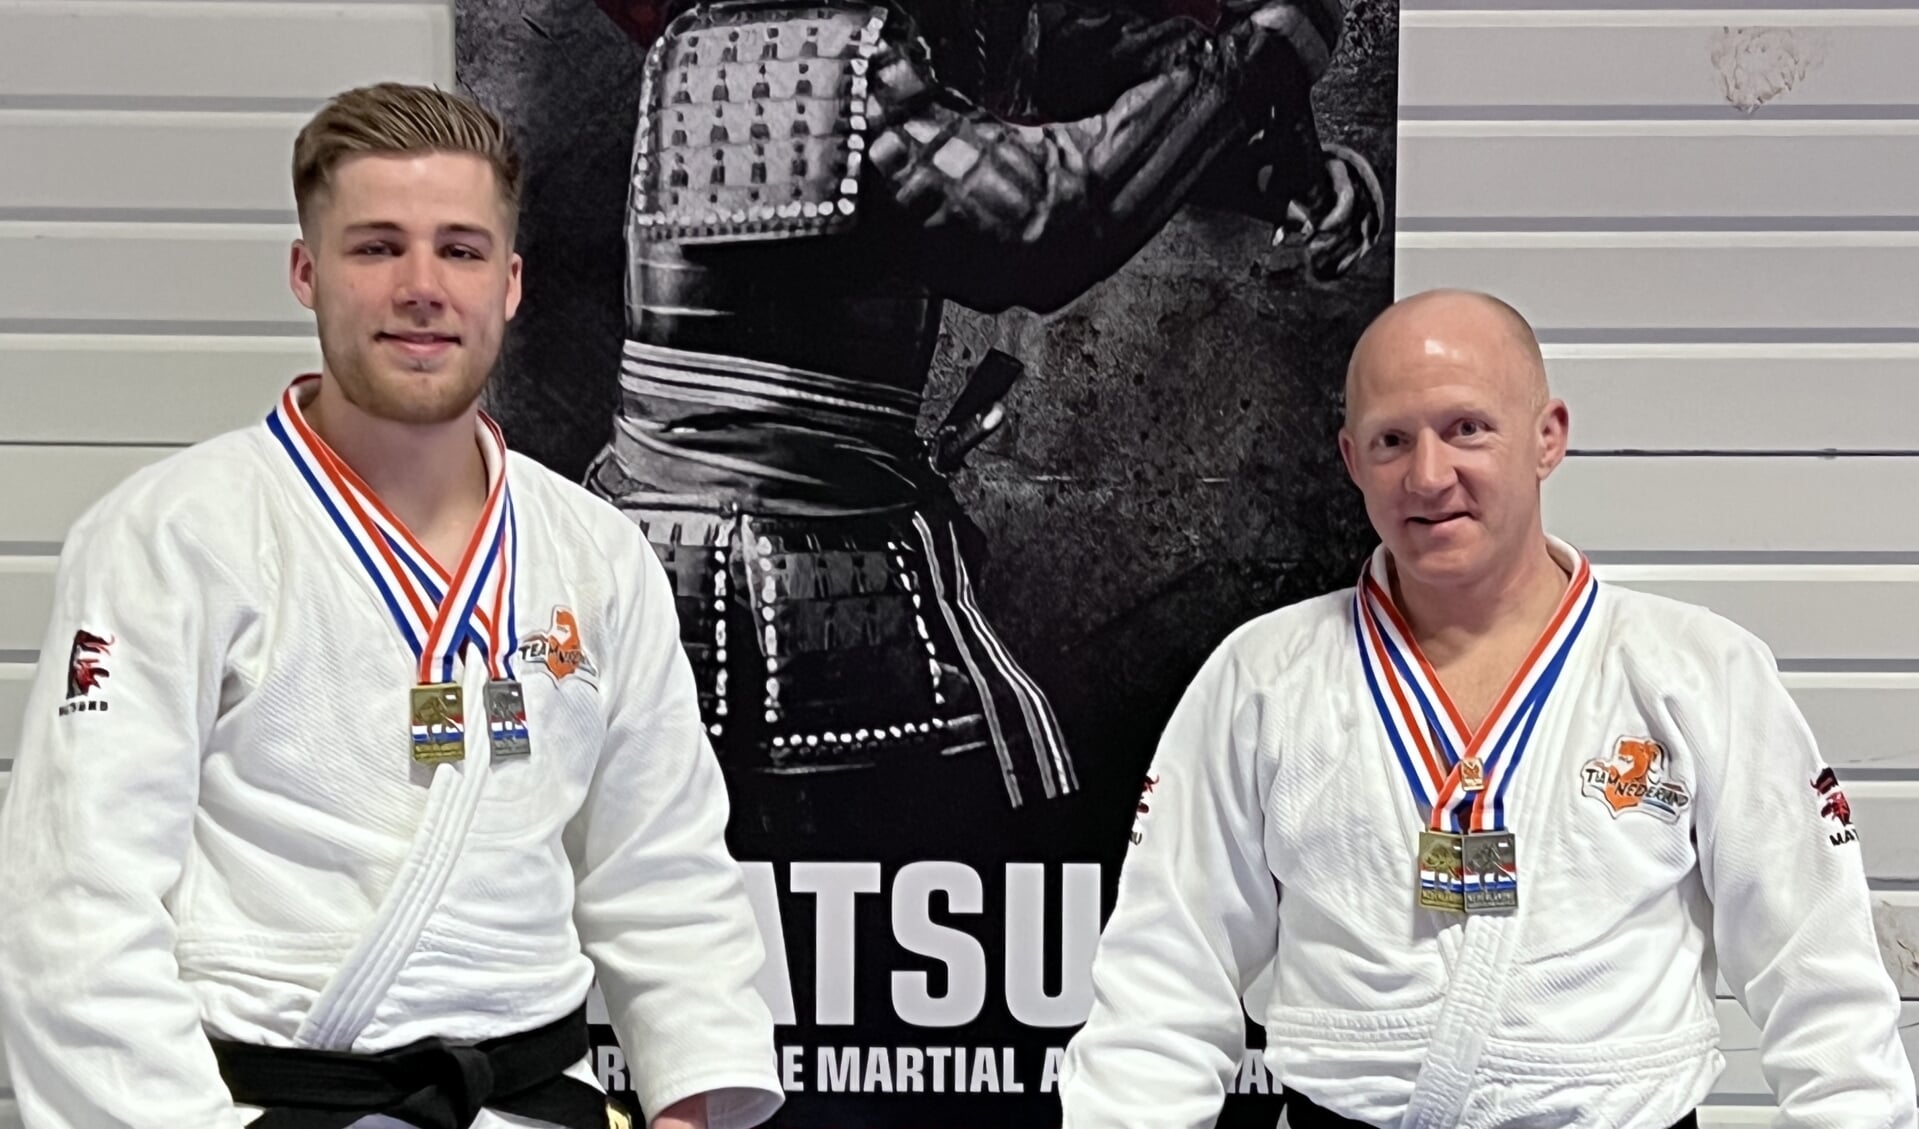 Judokas Van Roosendaal en Goossens behalen goud en zilver op NK Judo kata.